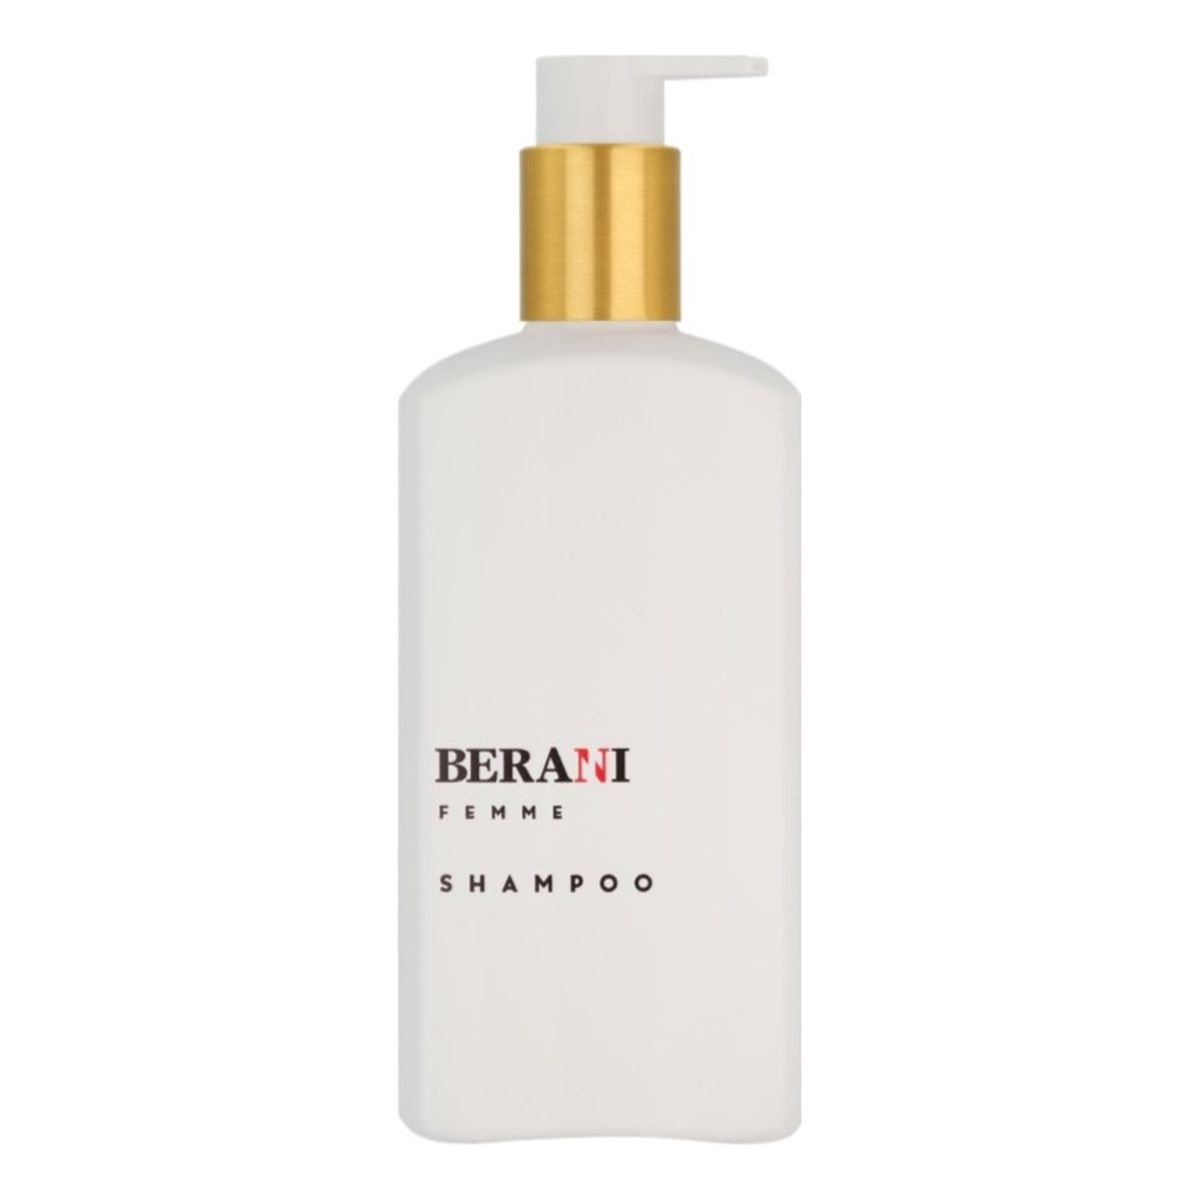 Berani Femme shampoo szampon do każdego rodzaju włosów dla kobiet 300ml